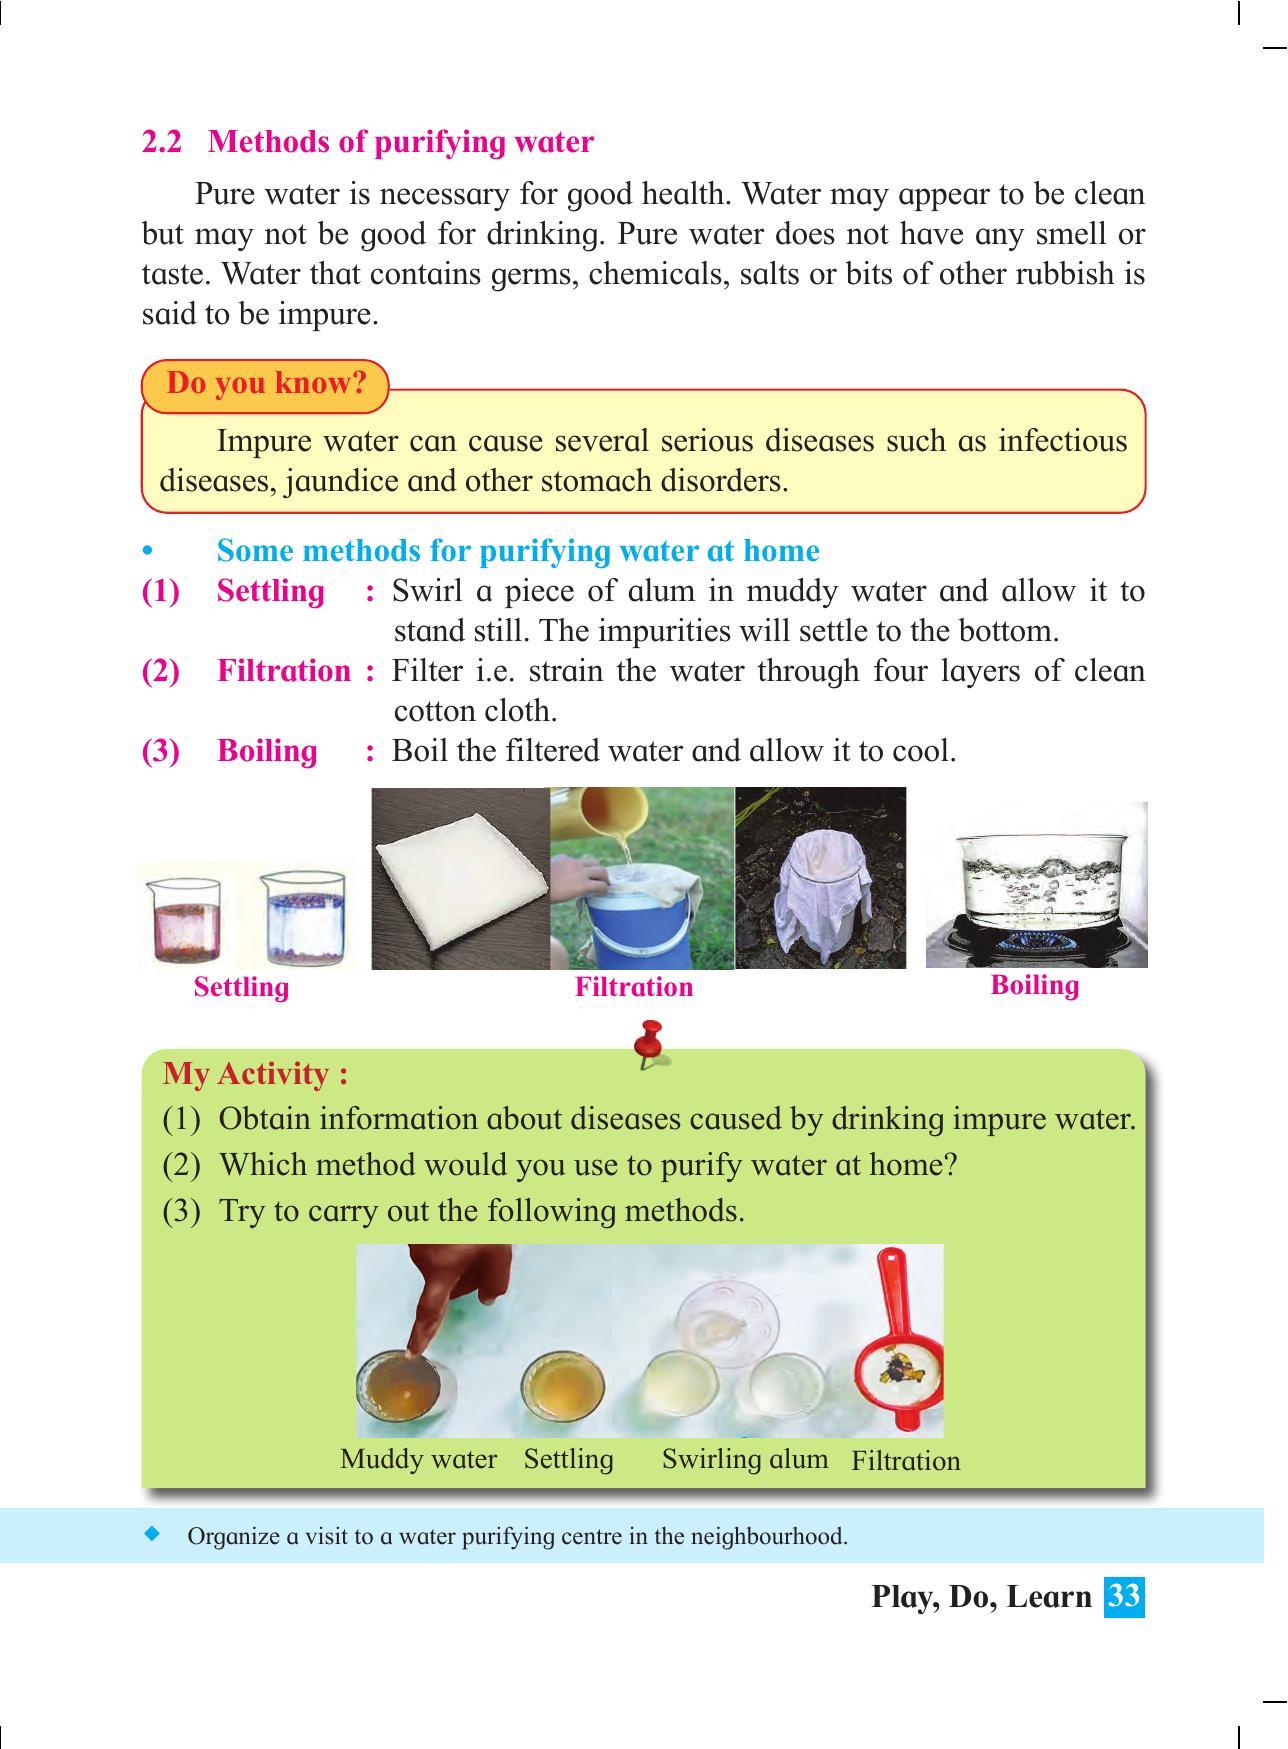 Maharashtra Board Class 4 Play Do Learn (English Medium) Textbook - Page 42